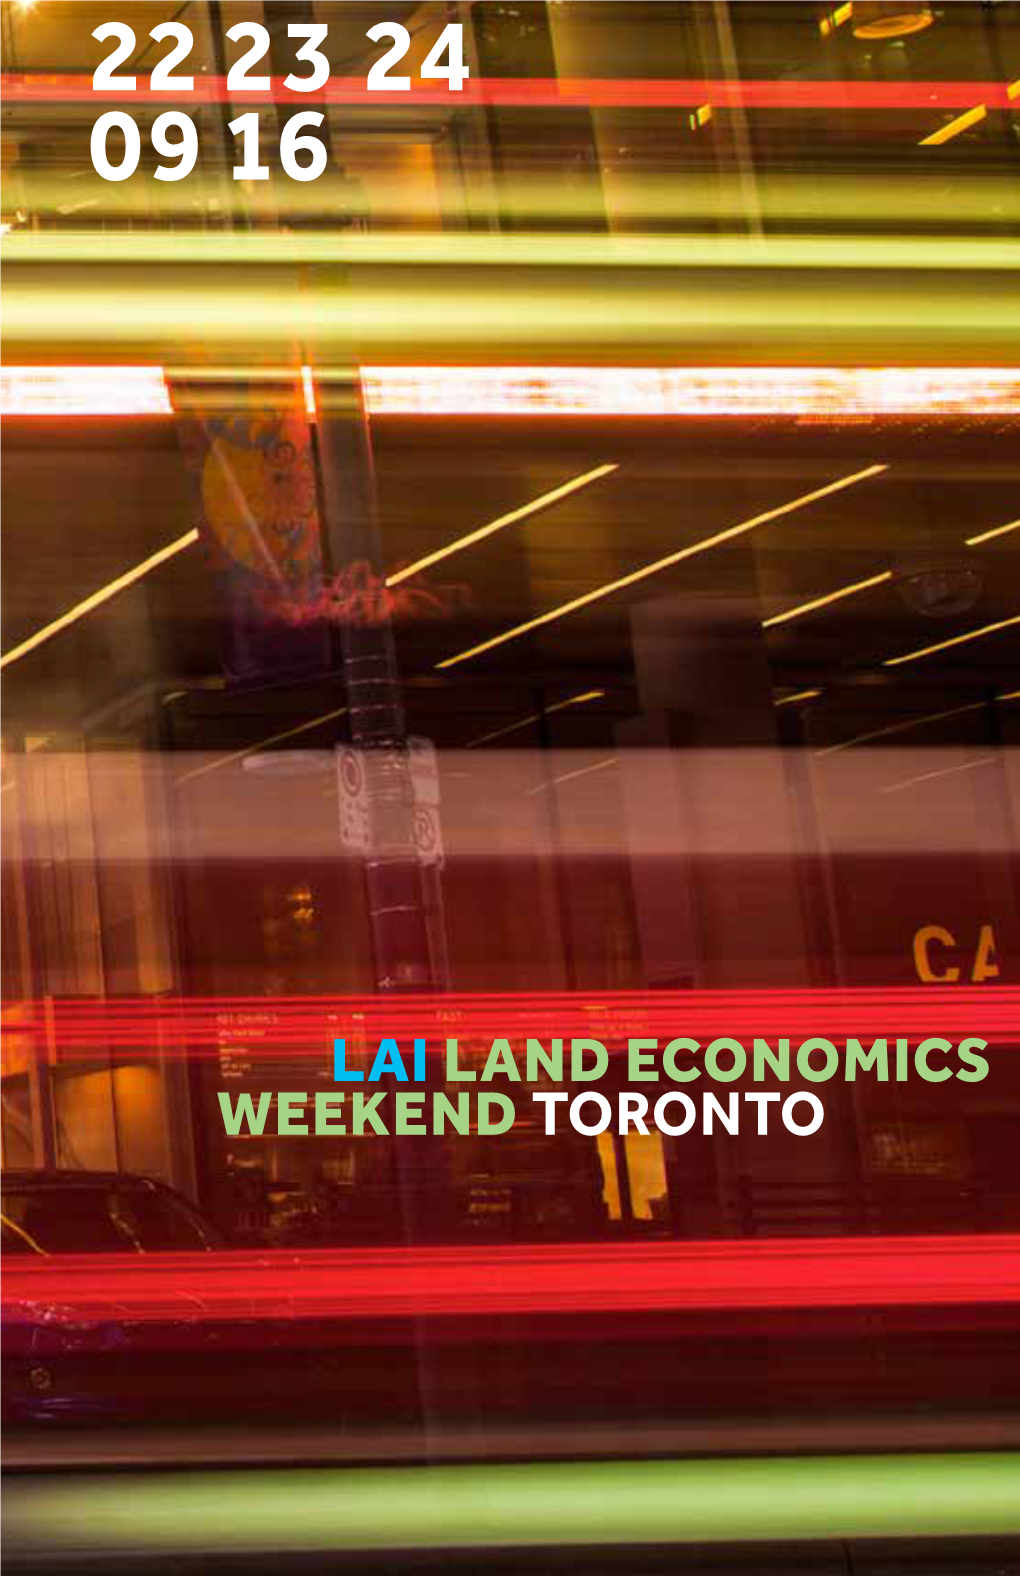 Lai Land Economics Weekend Toronto